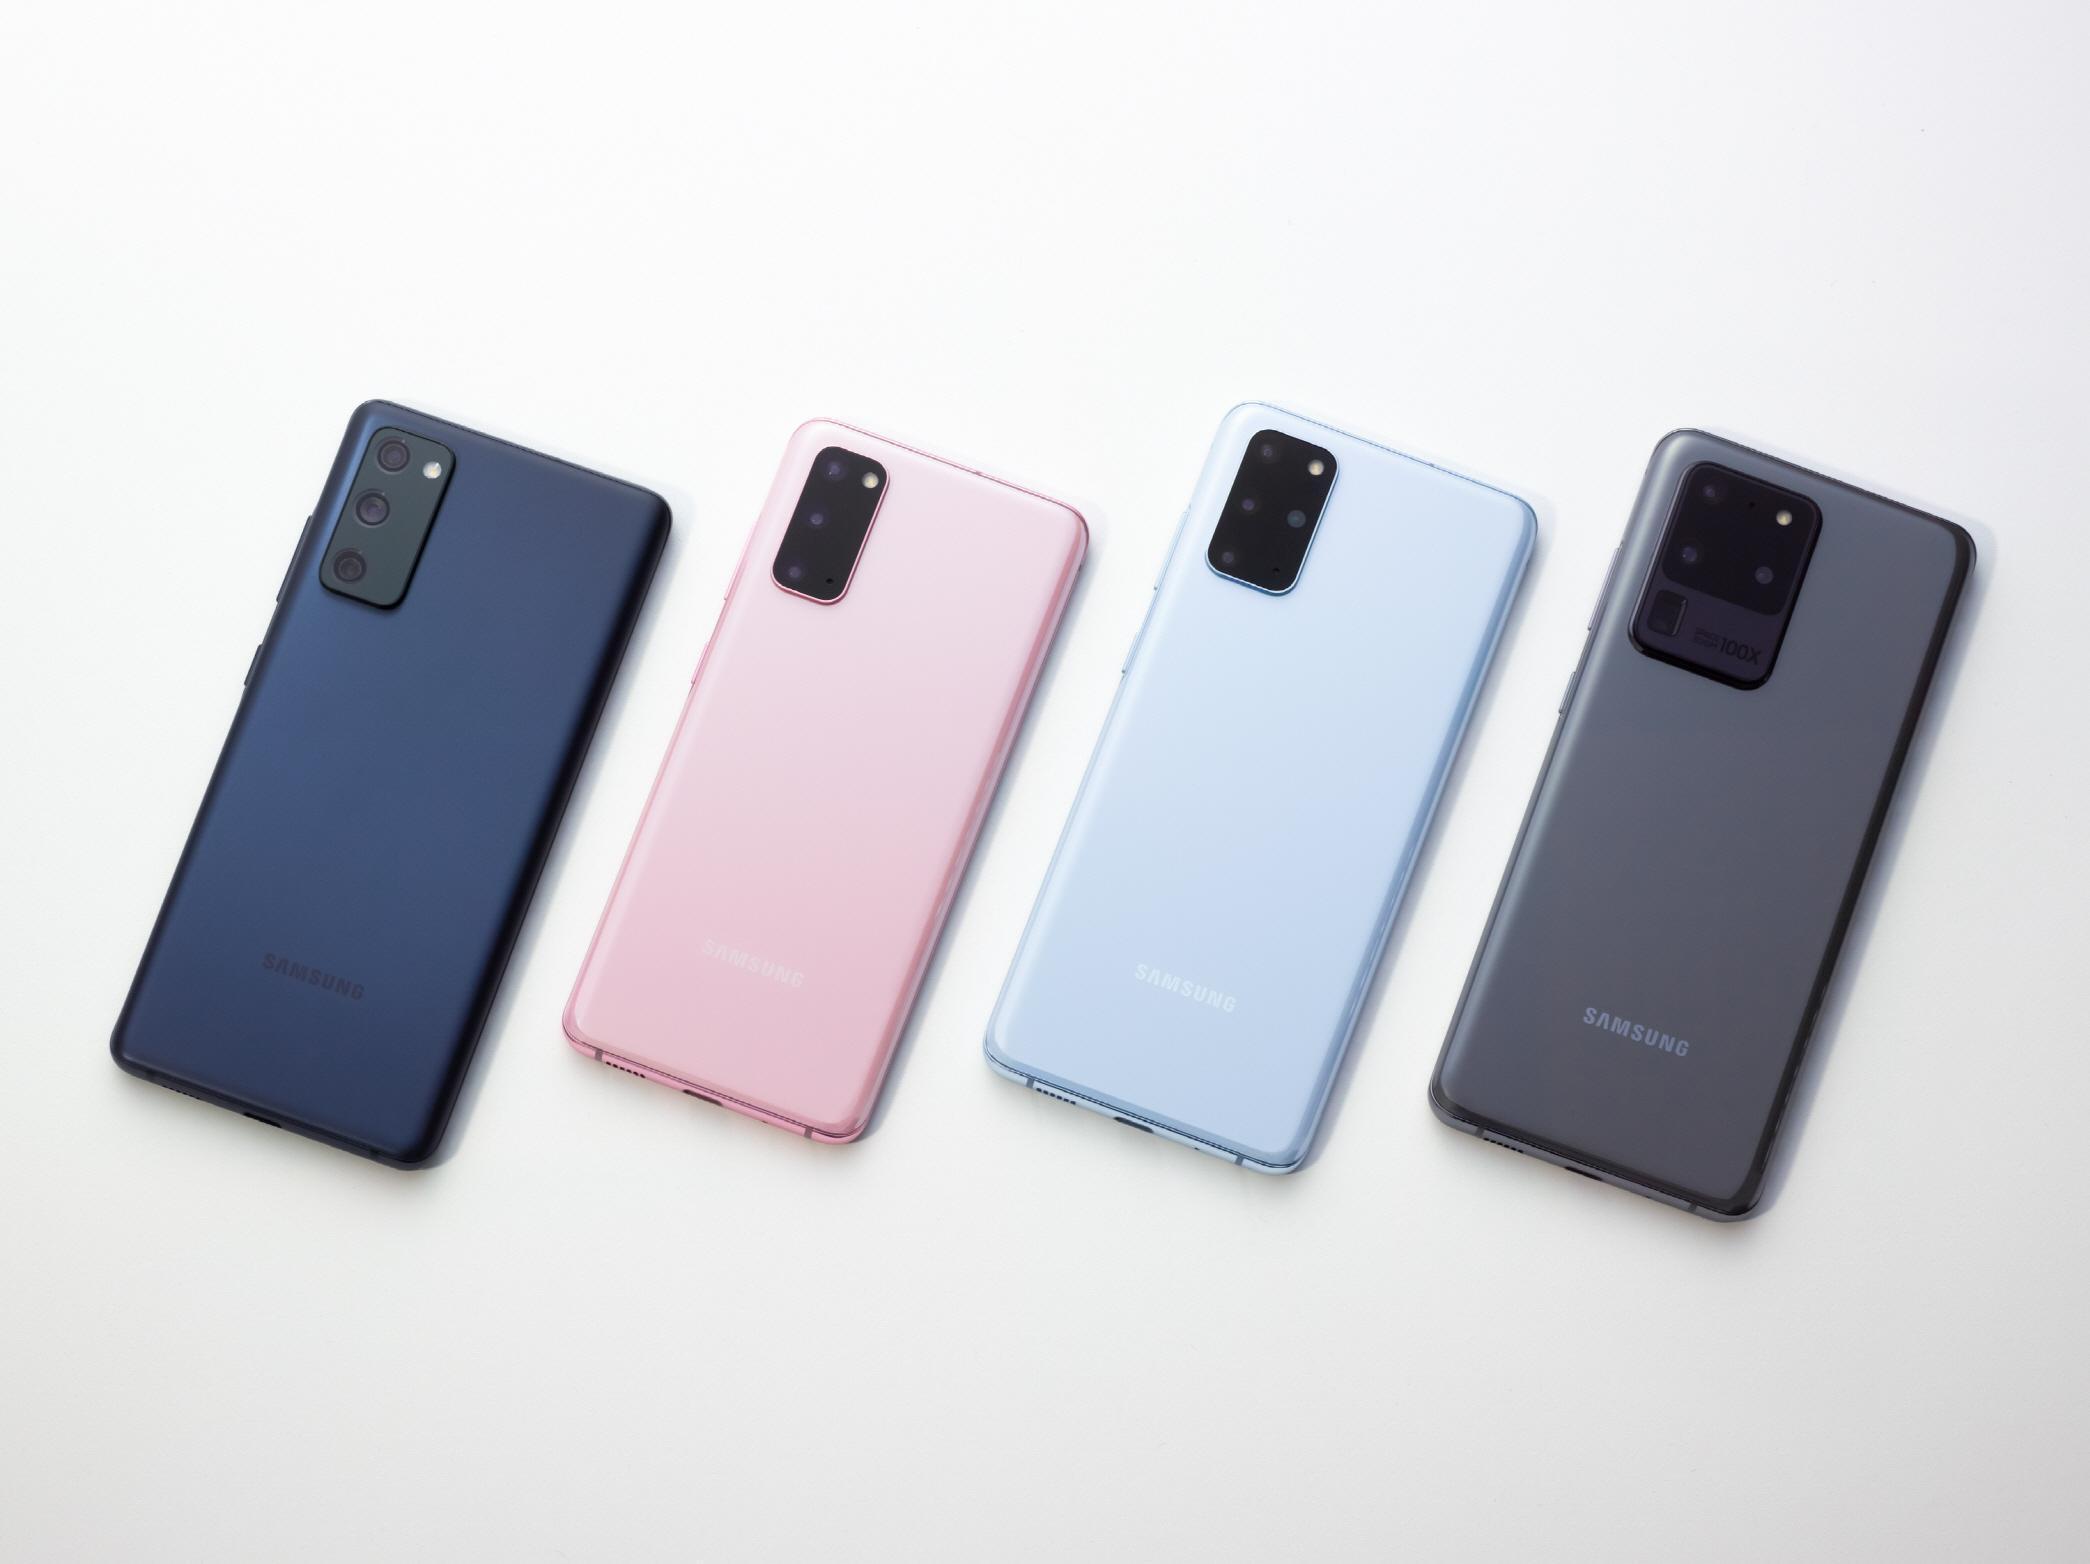 Samsung Galaxy S20 FE resmen tanıtıldı İşte fiyatı ve özellikleri